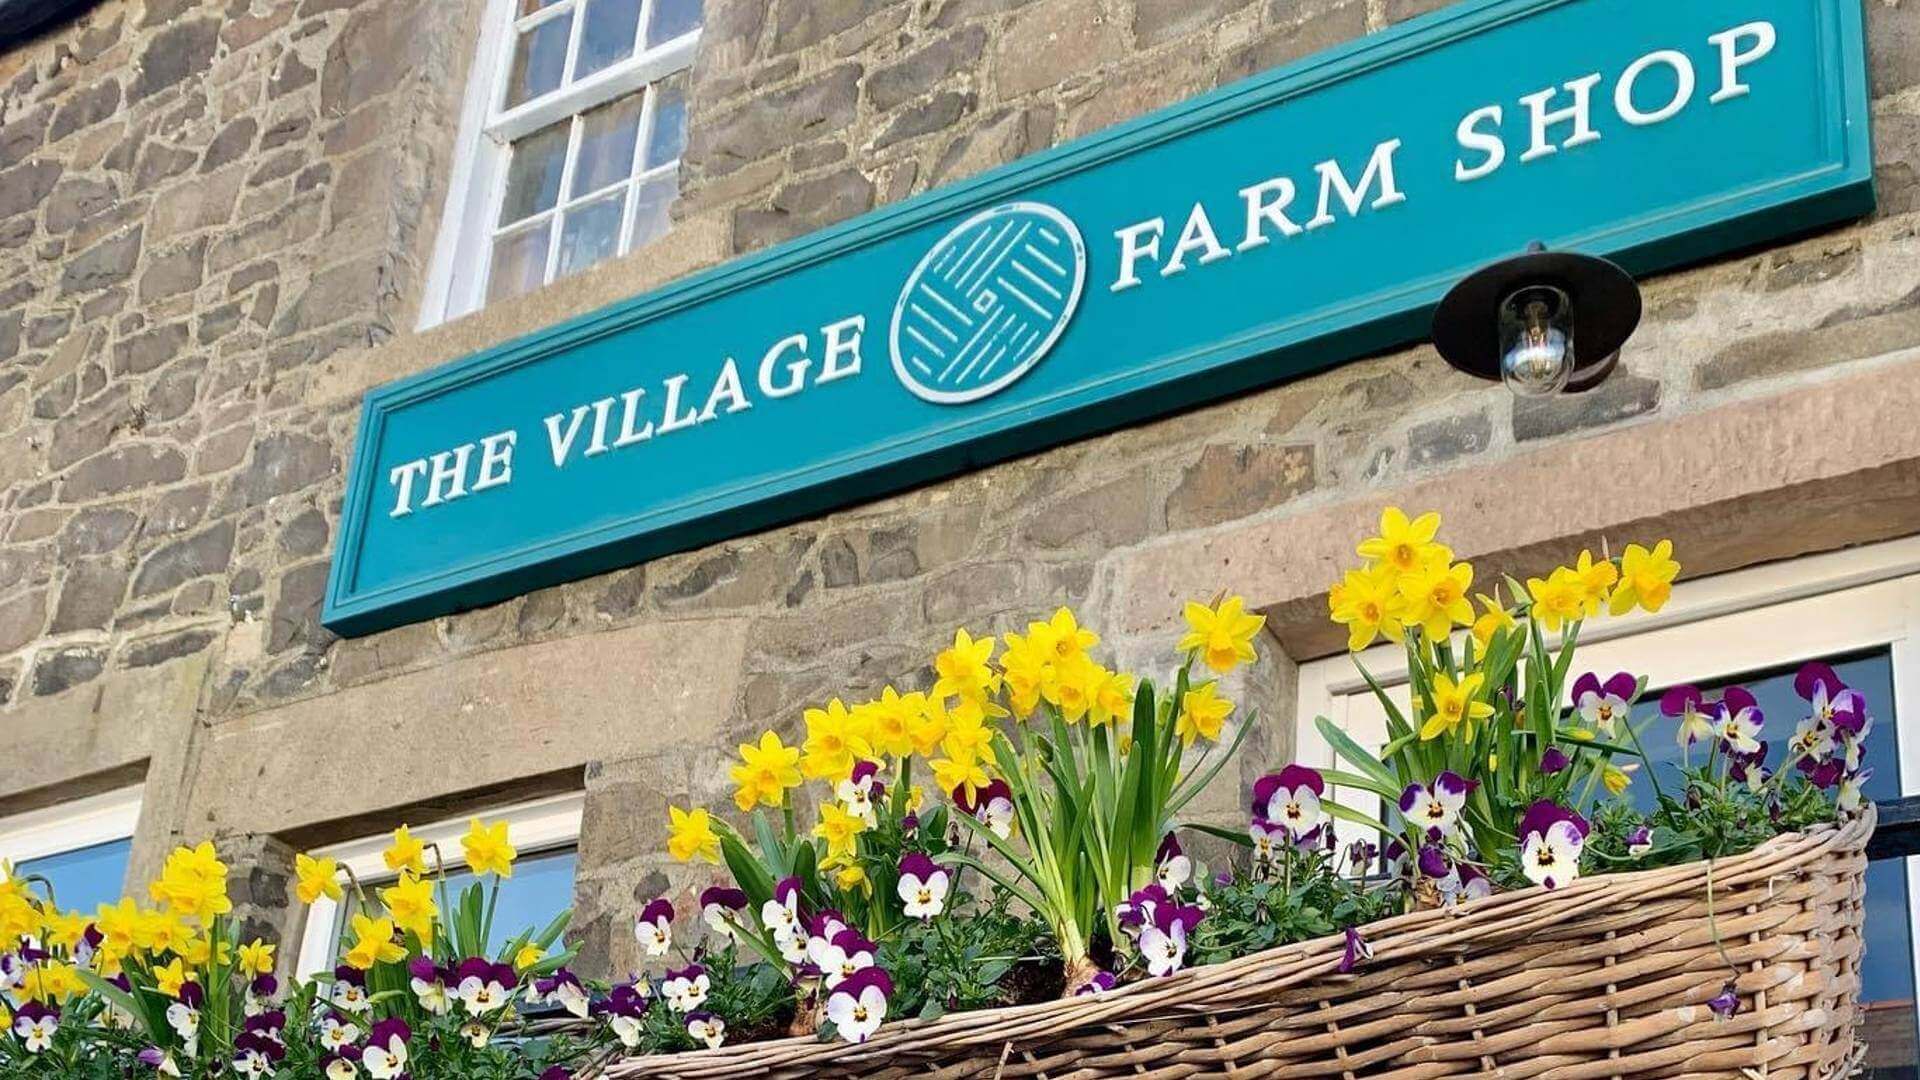 Village Farm Shop Embleton